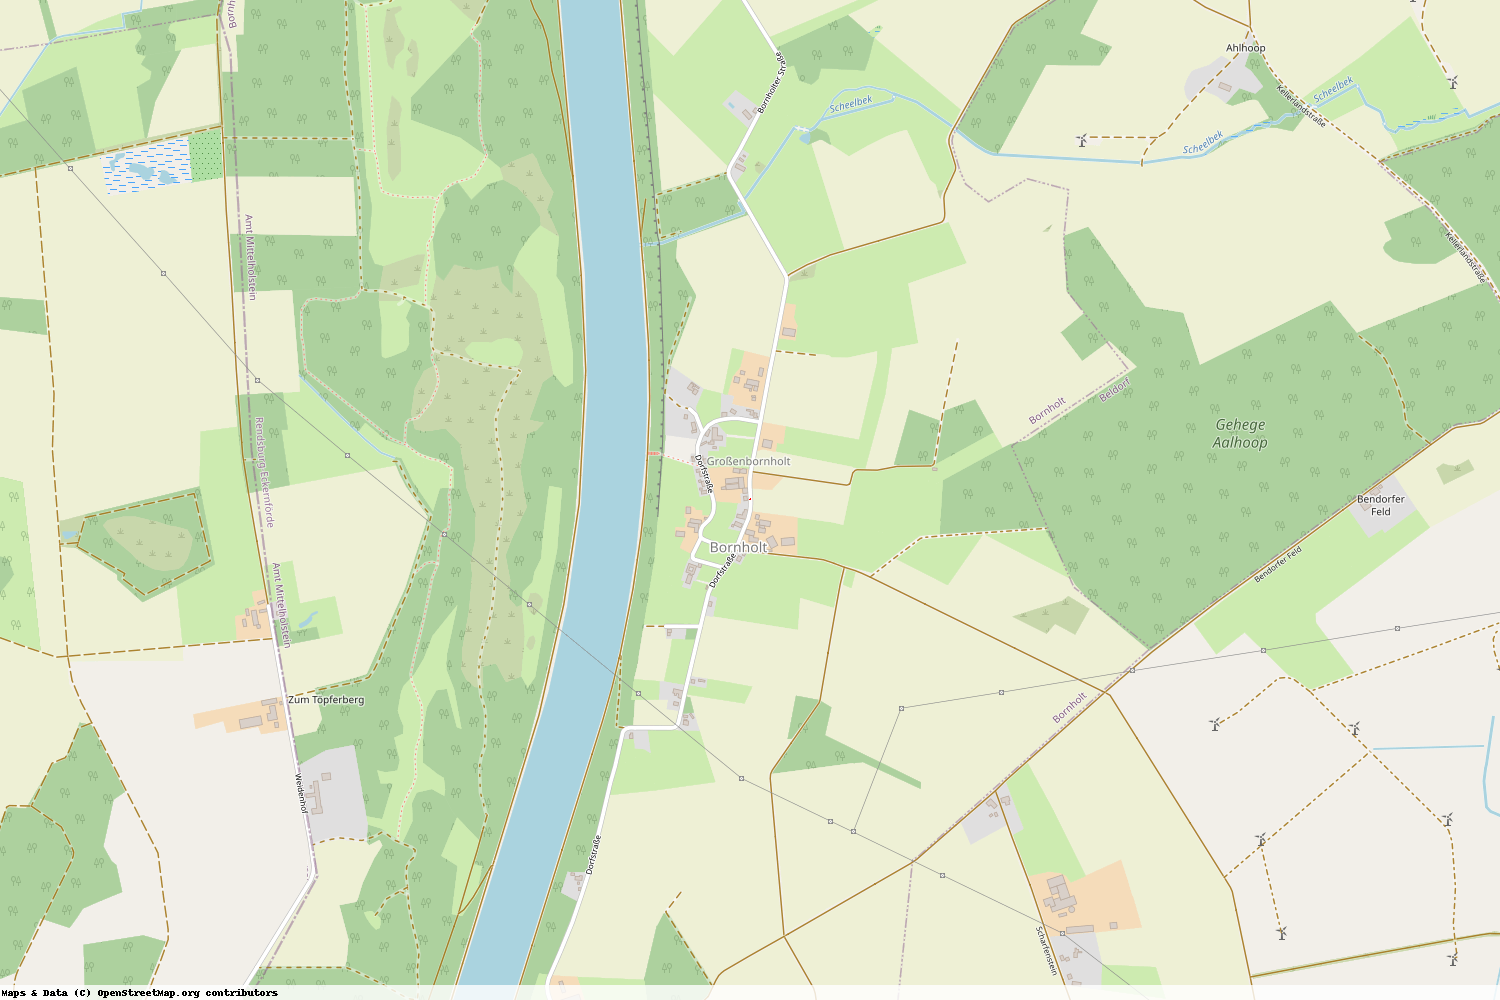 Ist gerade Stromausfall in Schleswig-Holstein - Rendsburg-Eckernförde - Bornholt?